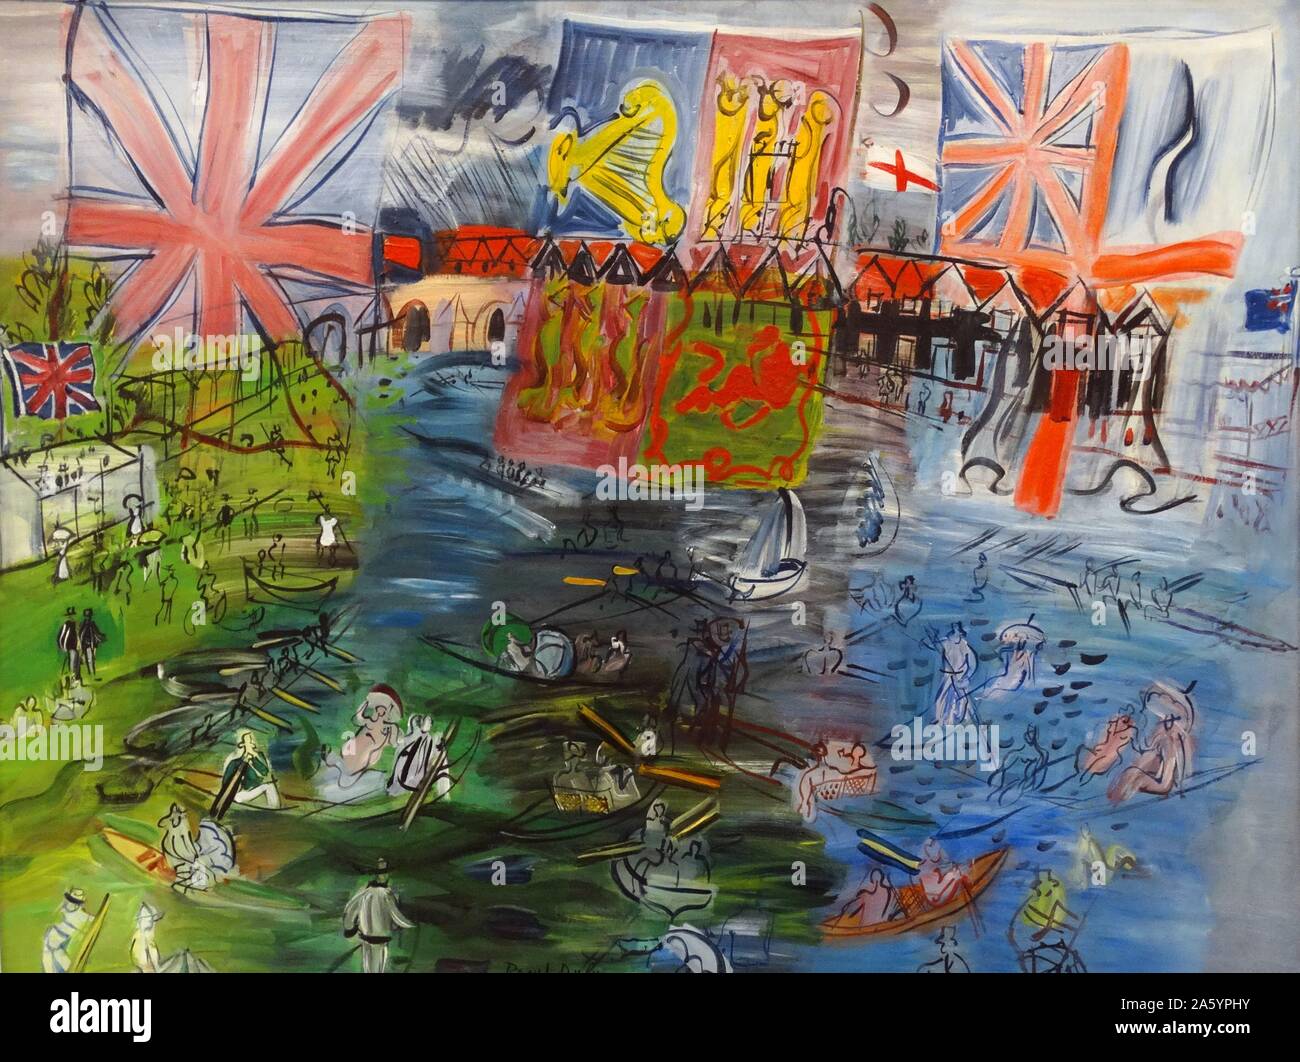 Henley, régates aux drapeaux par Raoul Dufy (1877-1953). Huile sur toile, 1941. Dufy était un peintre fauviste français qui a mis au point un style décoratif coloré, qui est rapidement devenue à la mode. Banque D'Images